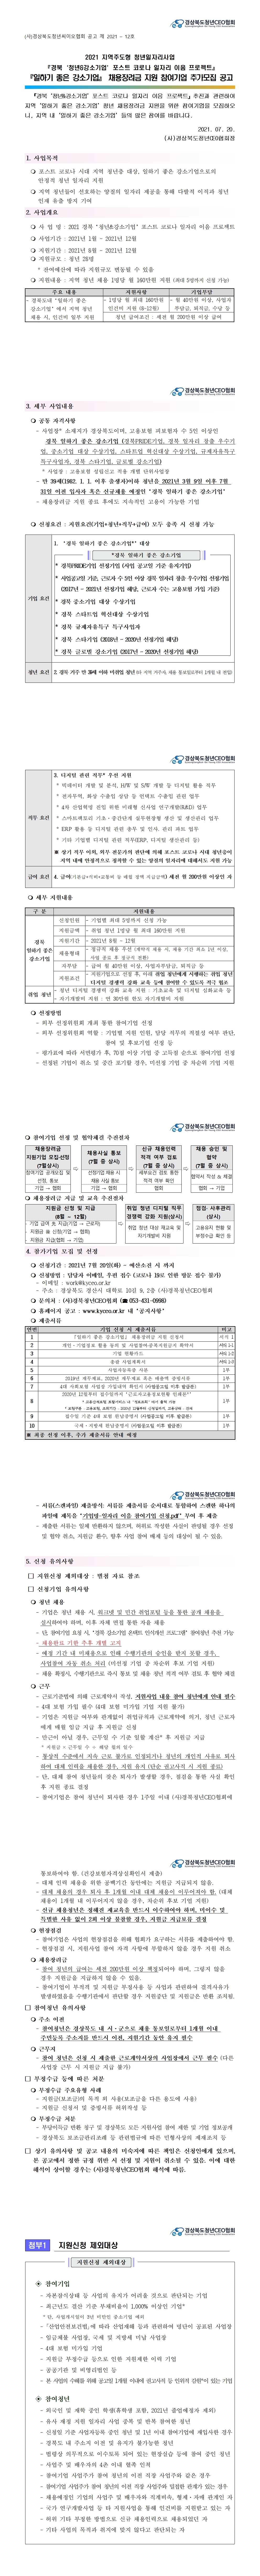 2021-12호) 경북 ‘청년&강소기업’ 포스트 코로나 일자리 이음 프로젝트 추가모집(2차) 공고 게시물 첨부이미지